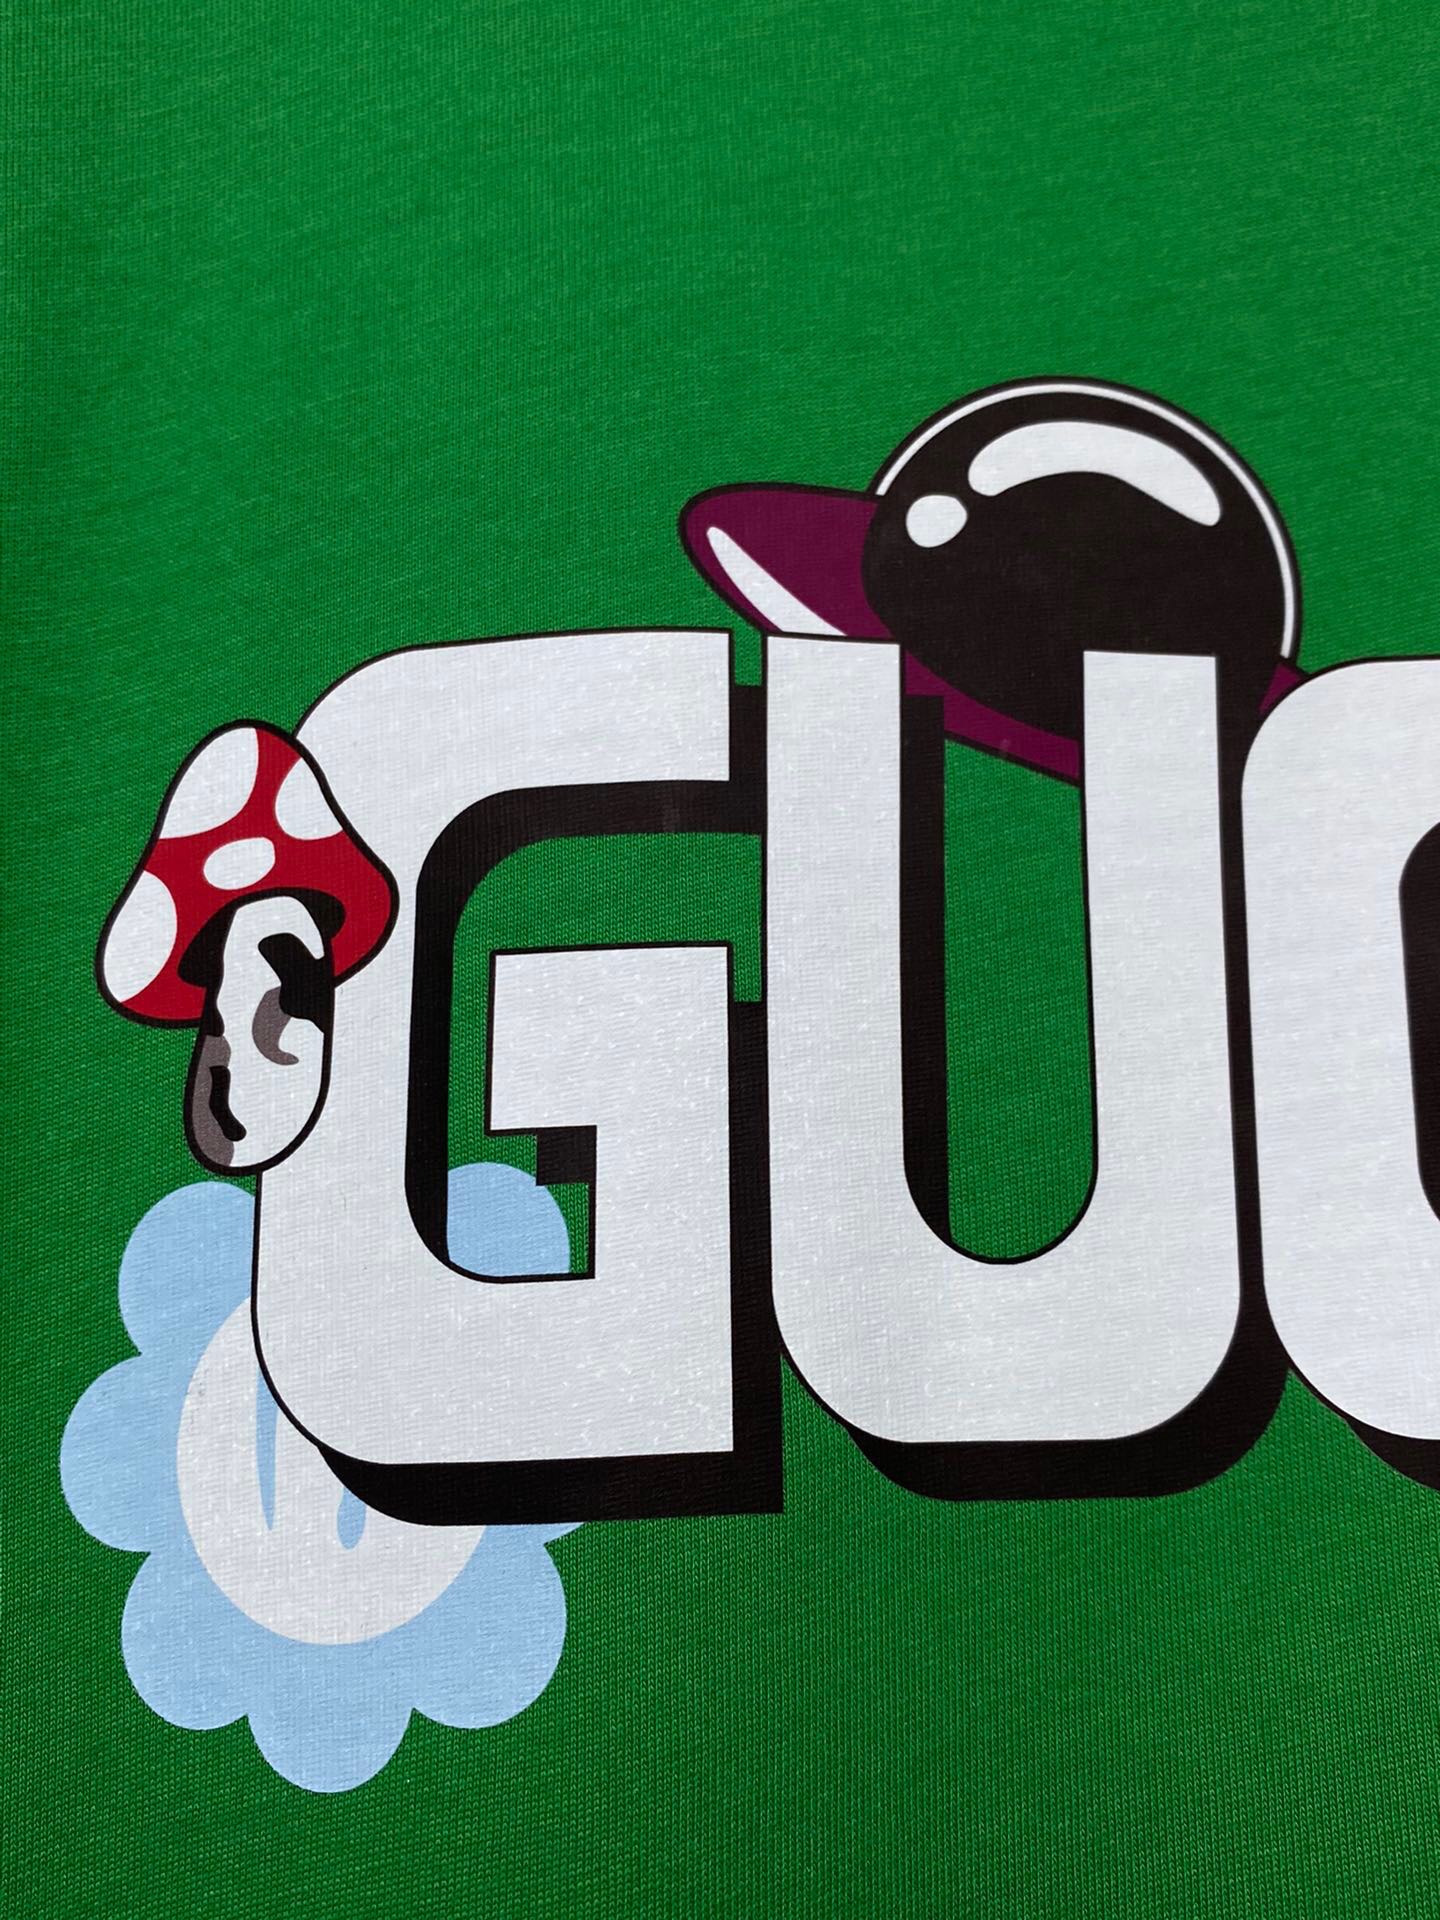 独家首发高端原单品质GU*CI24新款印花卡通搞怪蘑菇花朵logo字母绿T恤短袖印花可爱帅气又时髦的调调